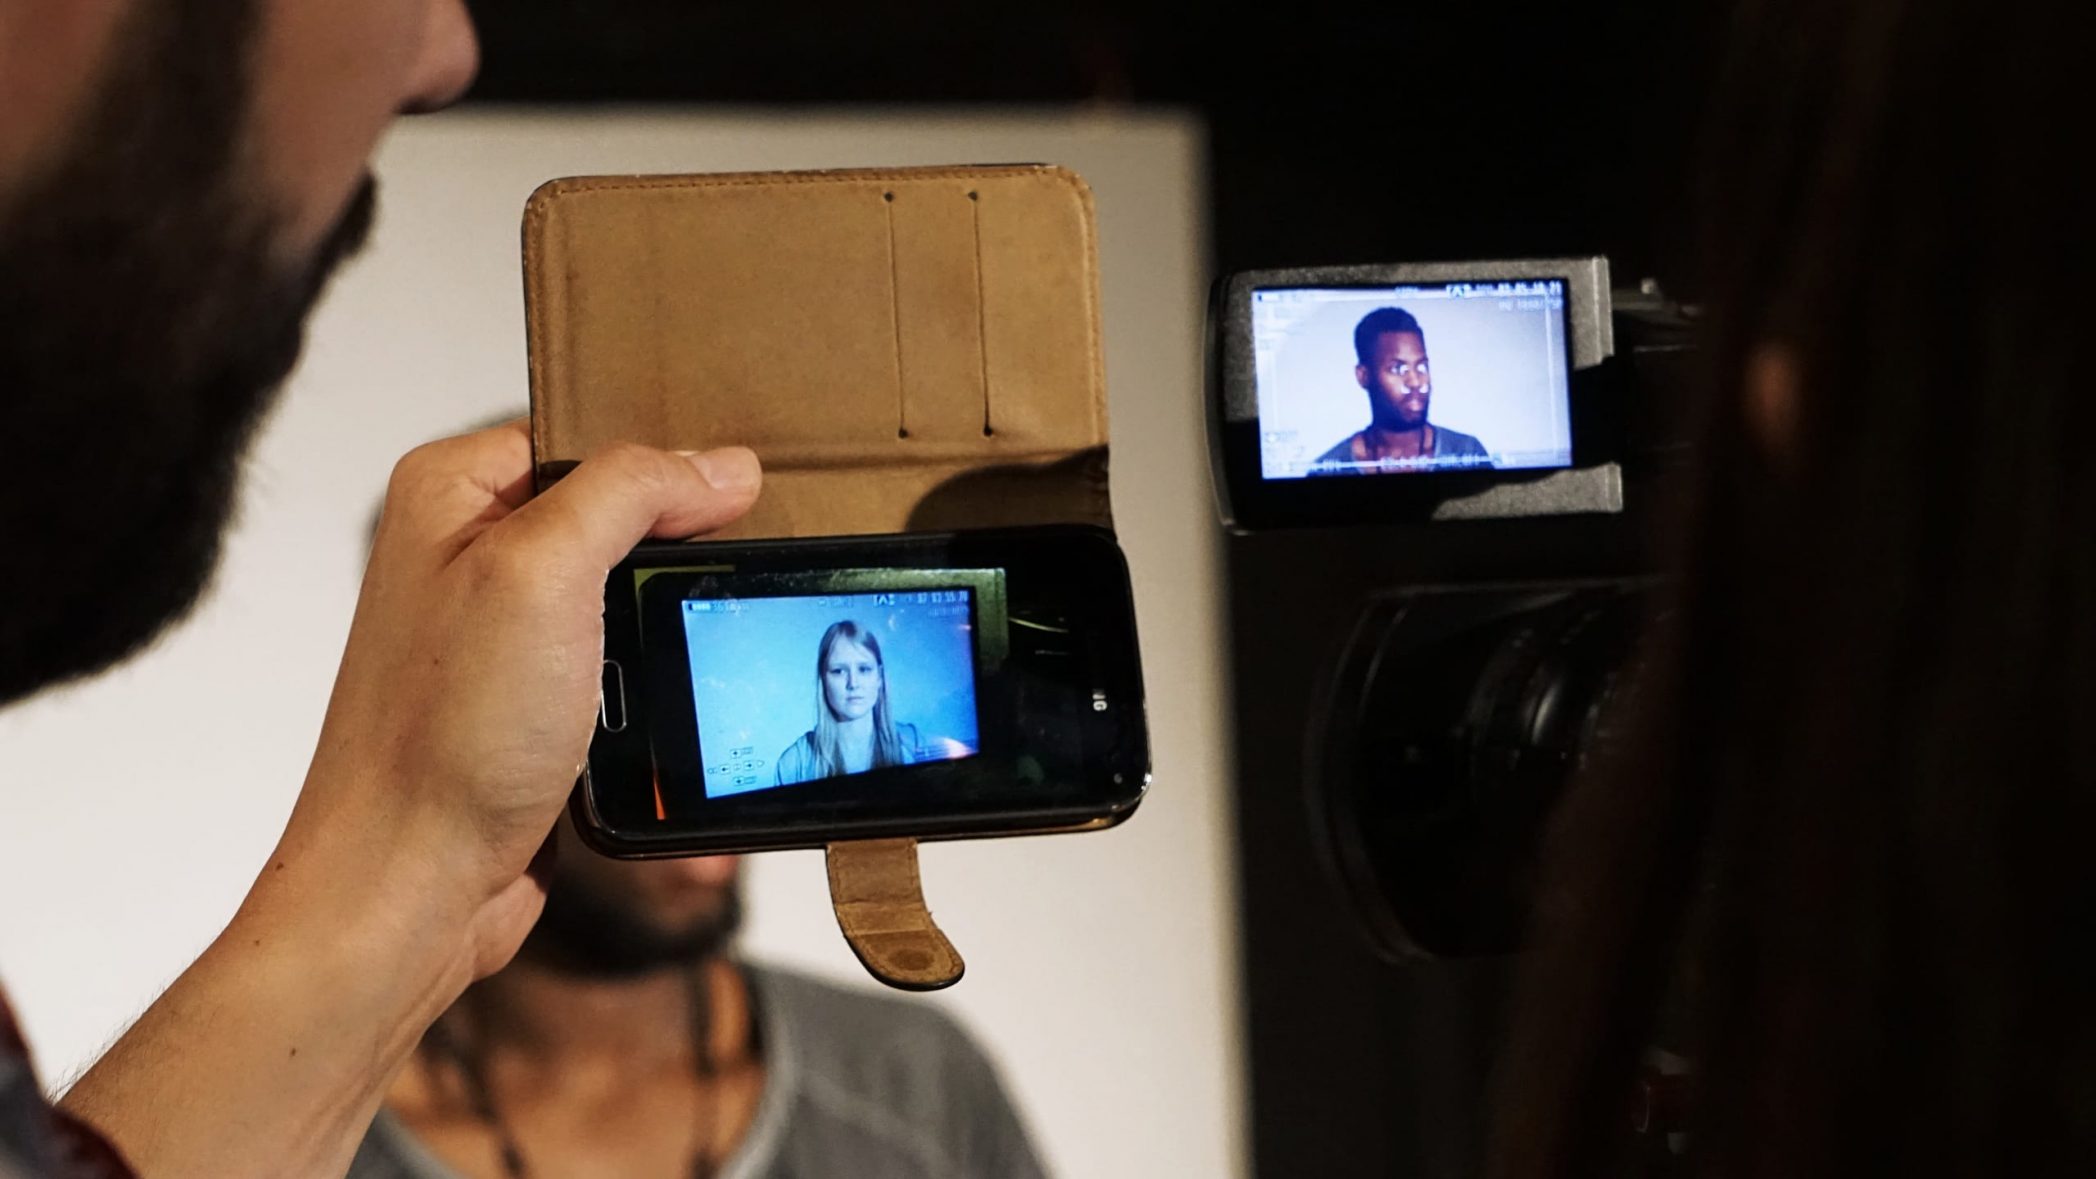 zwei Handy Screens, mit denen gerade zwei Jugendliche gefilmt werden